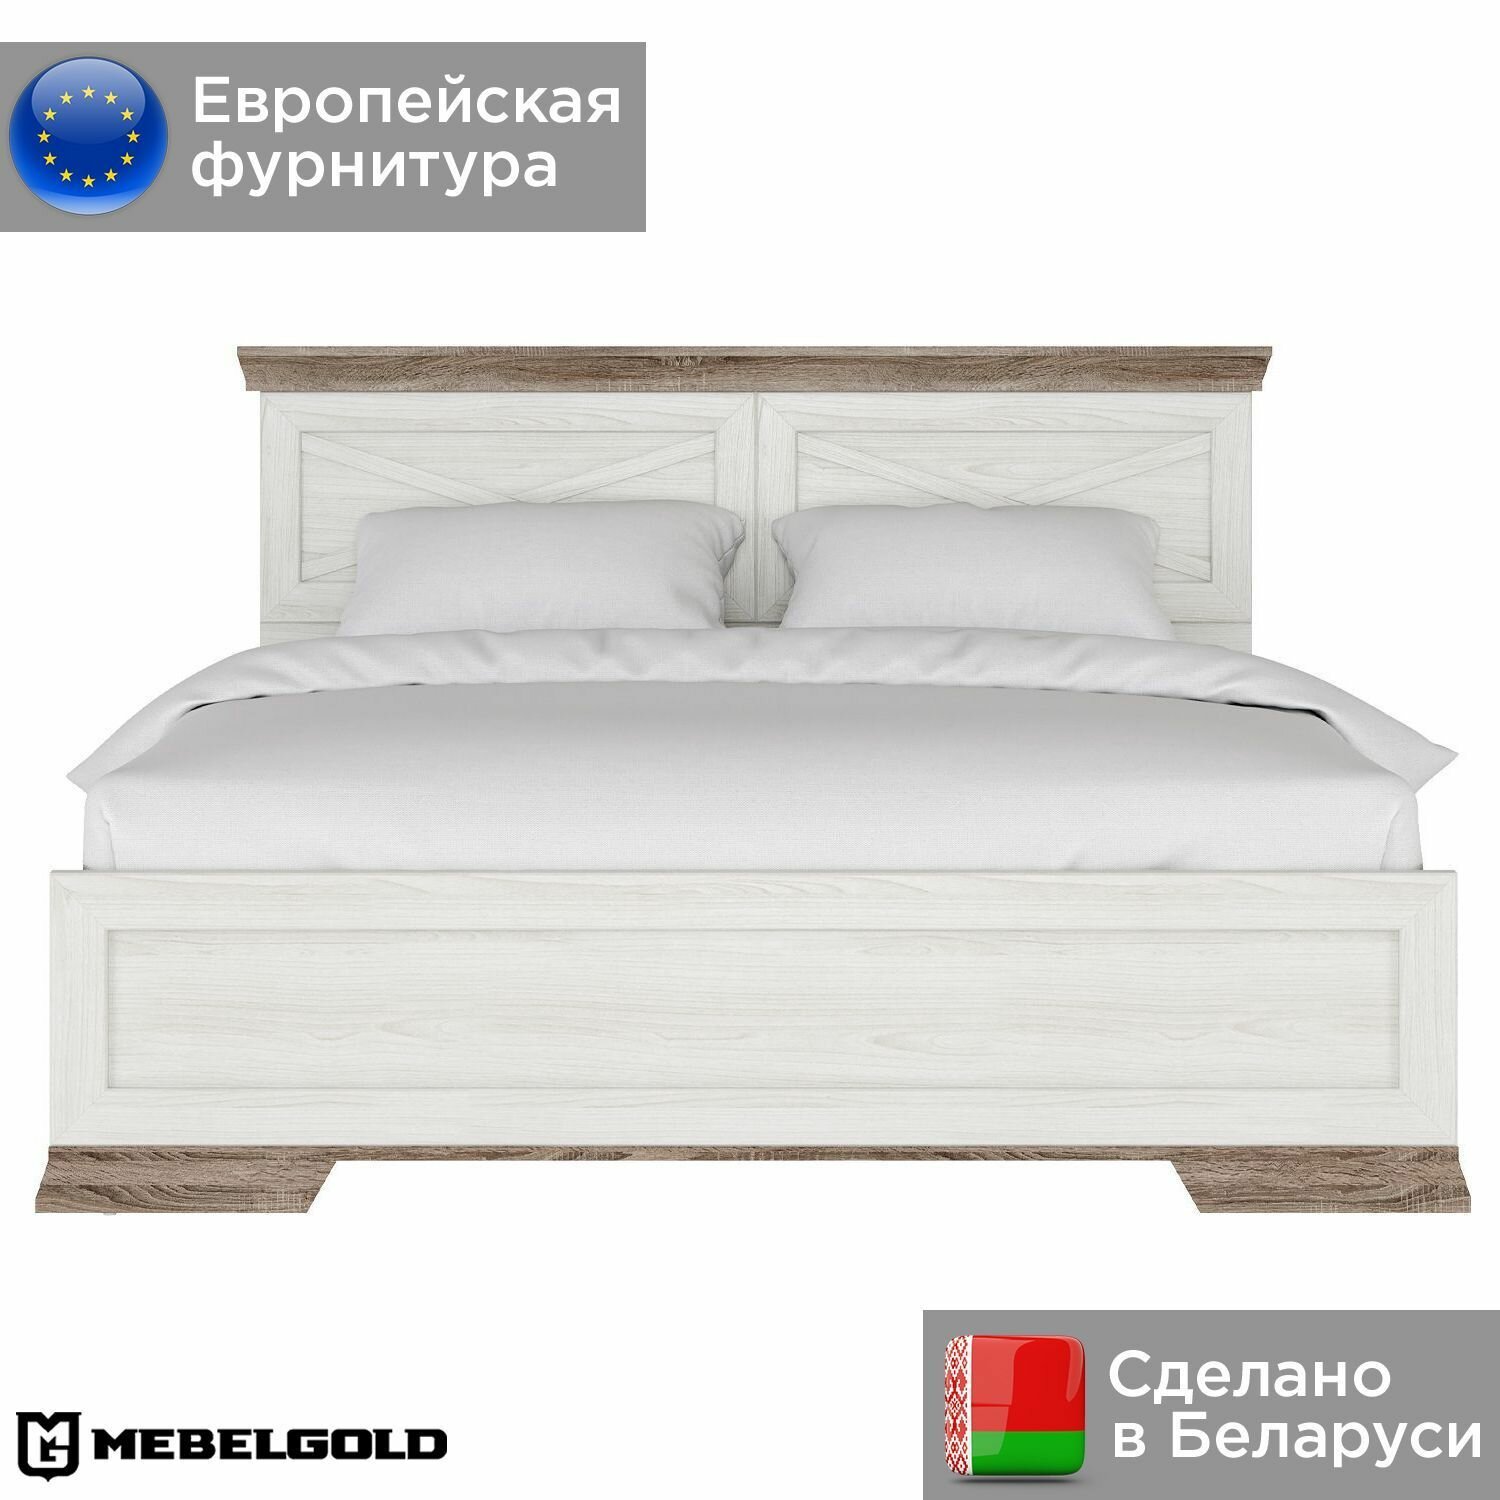 Марсель Кровать двуспальная LOZ160х200 с подъемным механизмом МебельГолд